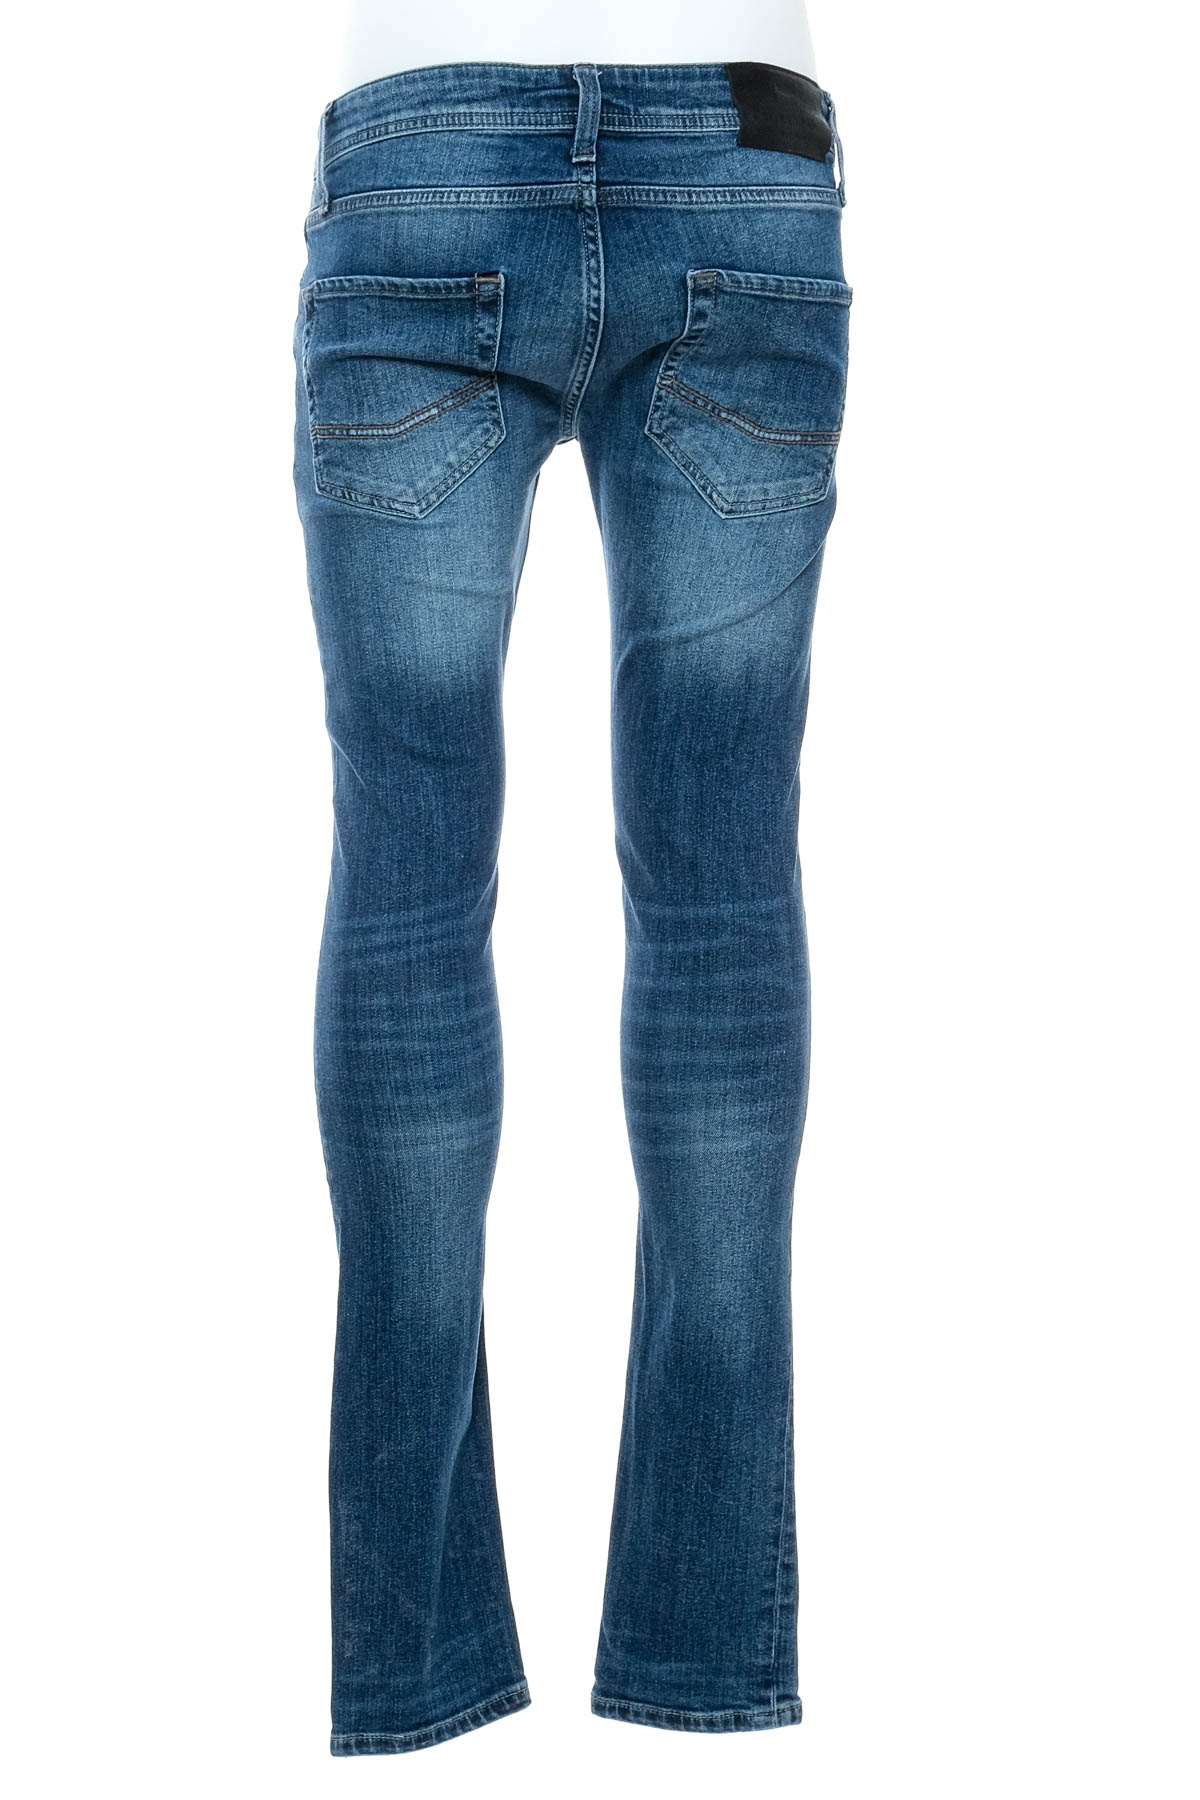 Jeans pentru bărbăți - Cross Jeans - 1